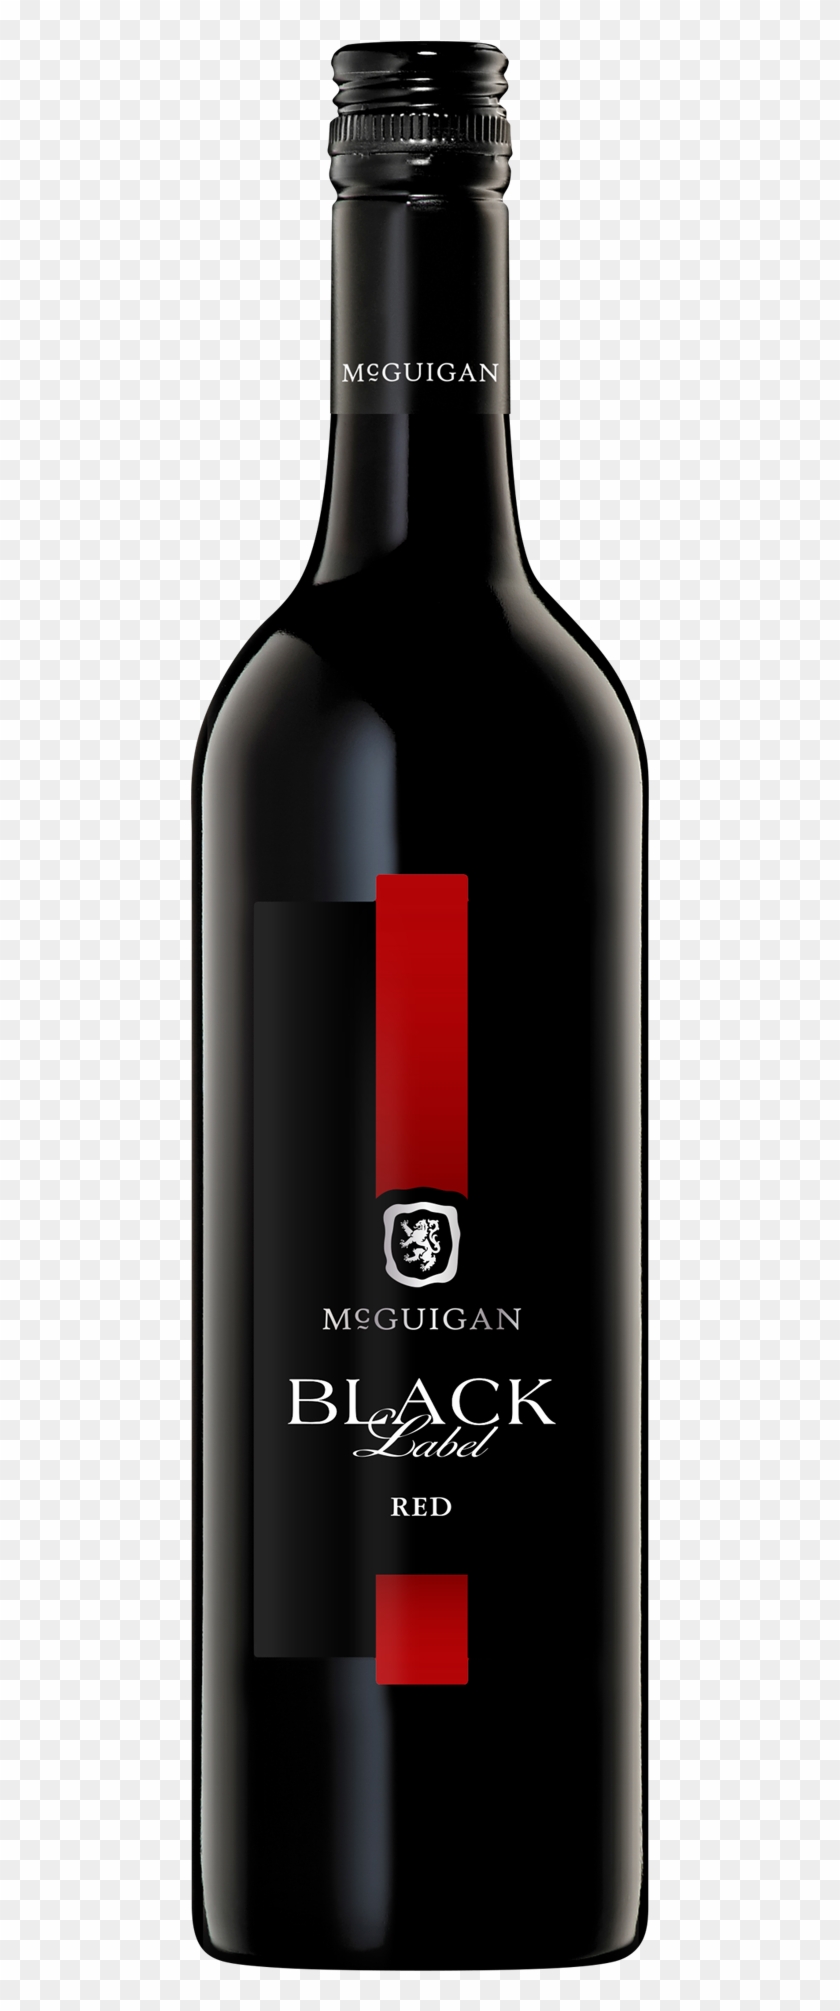 Mcguigan Black Label Red Bottle Clipart